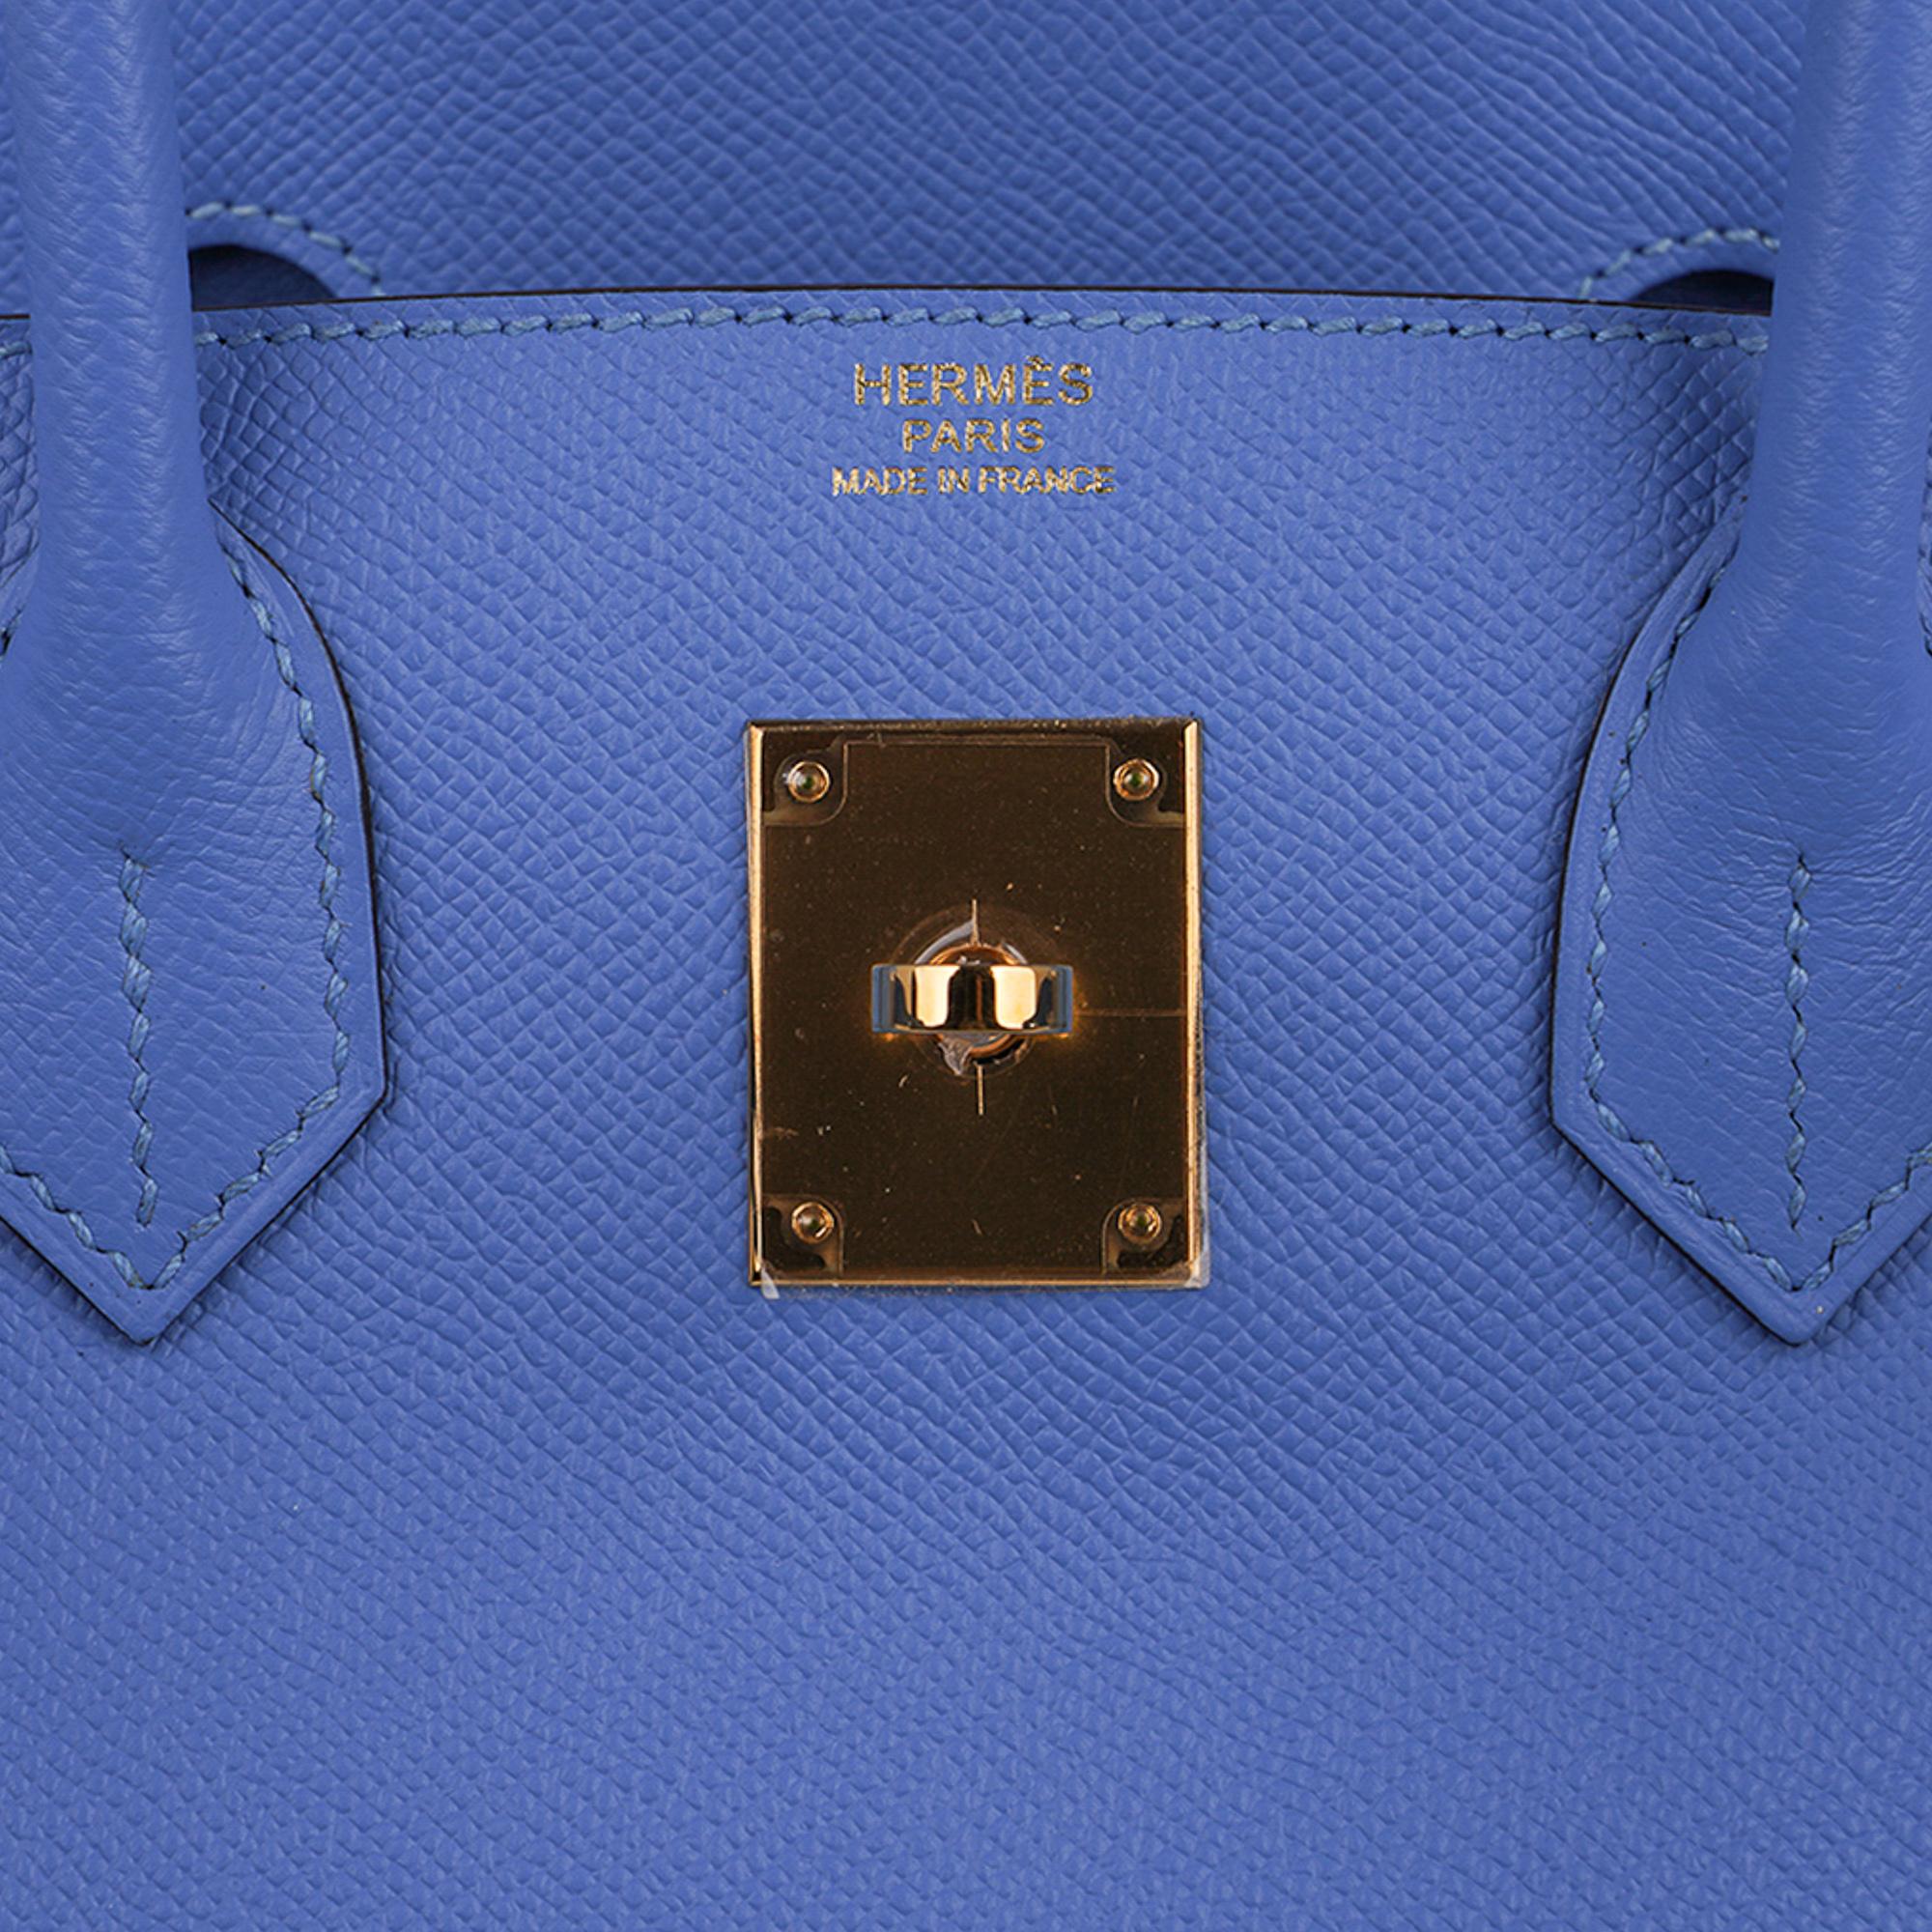 Hermes Birkin 30 Blue Paradis Bag Gold Hardware Epsom Leather For Sale 2